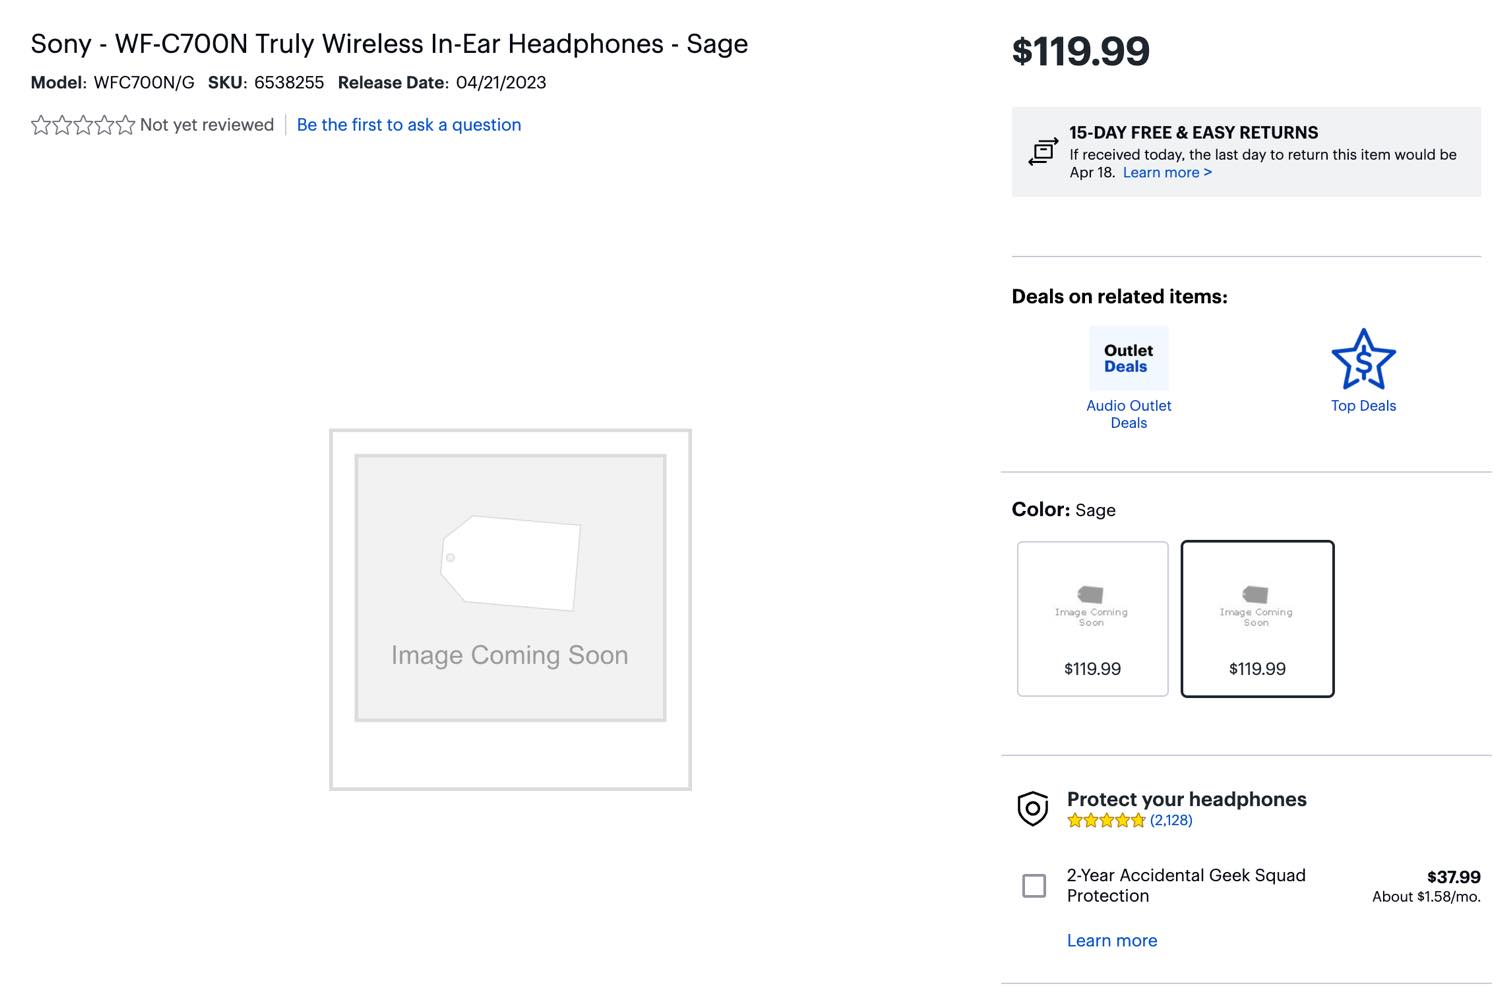 ソニーの新型ワイヤレスイヤホン｢WF-C700N｣が早くも米国の量販店に登場 ｰ 120ドルで4月21日に発売予定